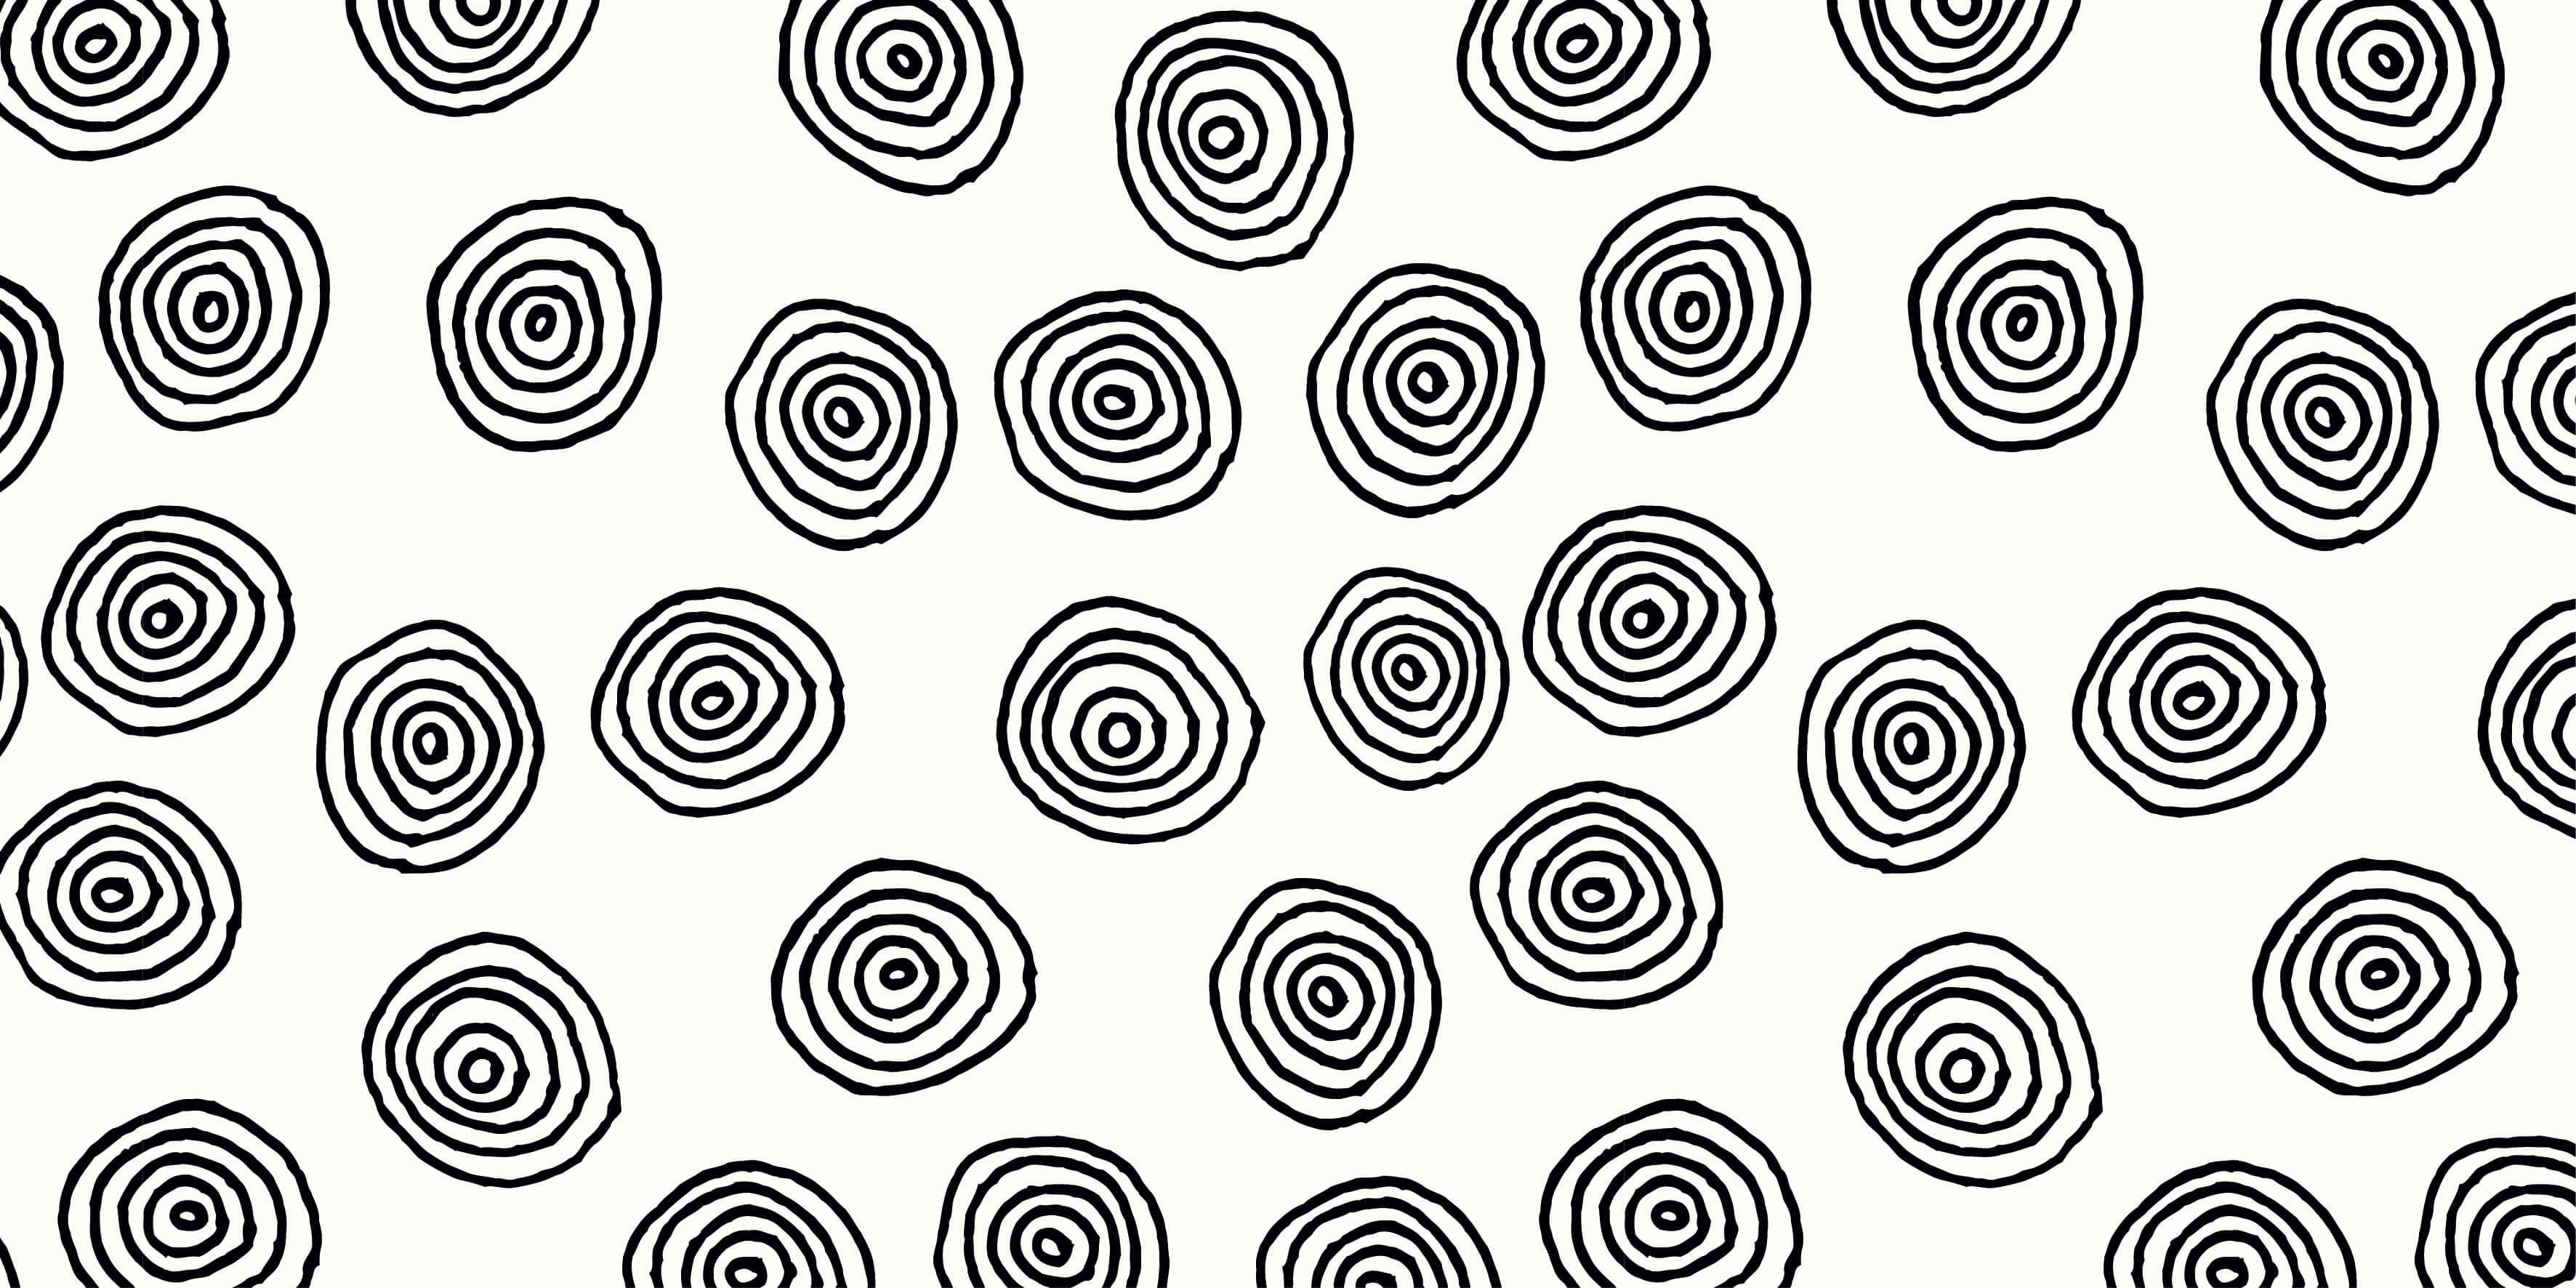 Fond d'écran abstrait - Cercles abstraits en noir et blanc - Chambre d'hobby